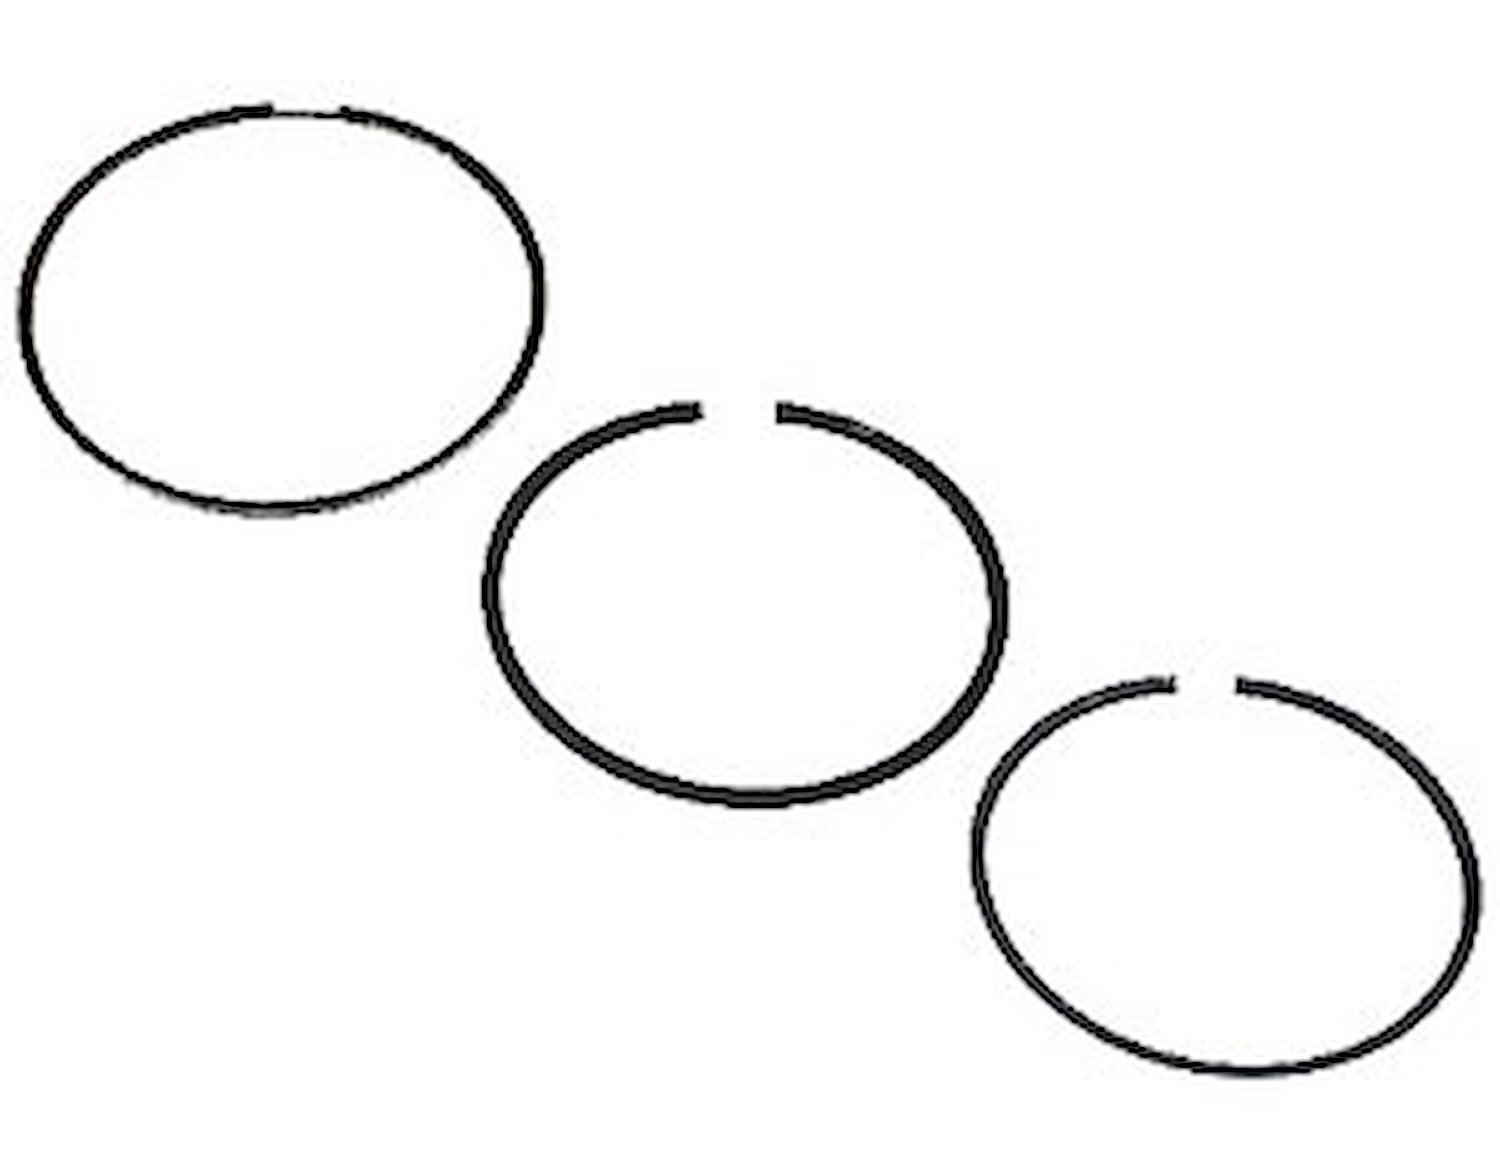 Standard Tension Piston Ring Set Top Ring: 1.2mm